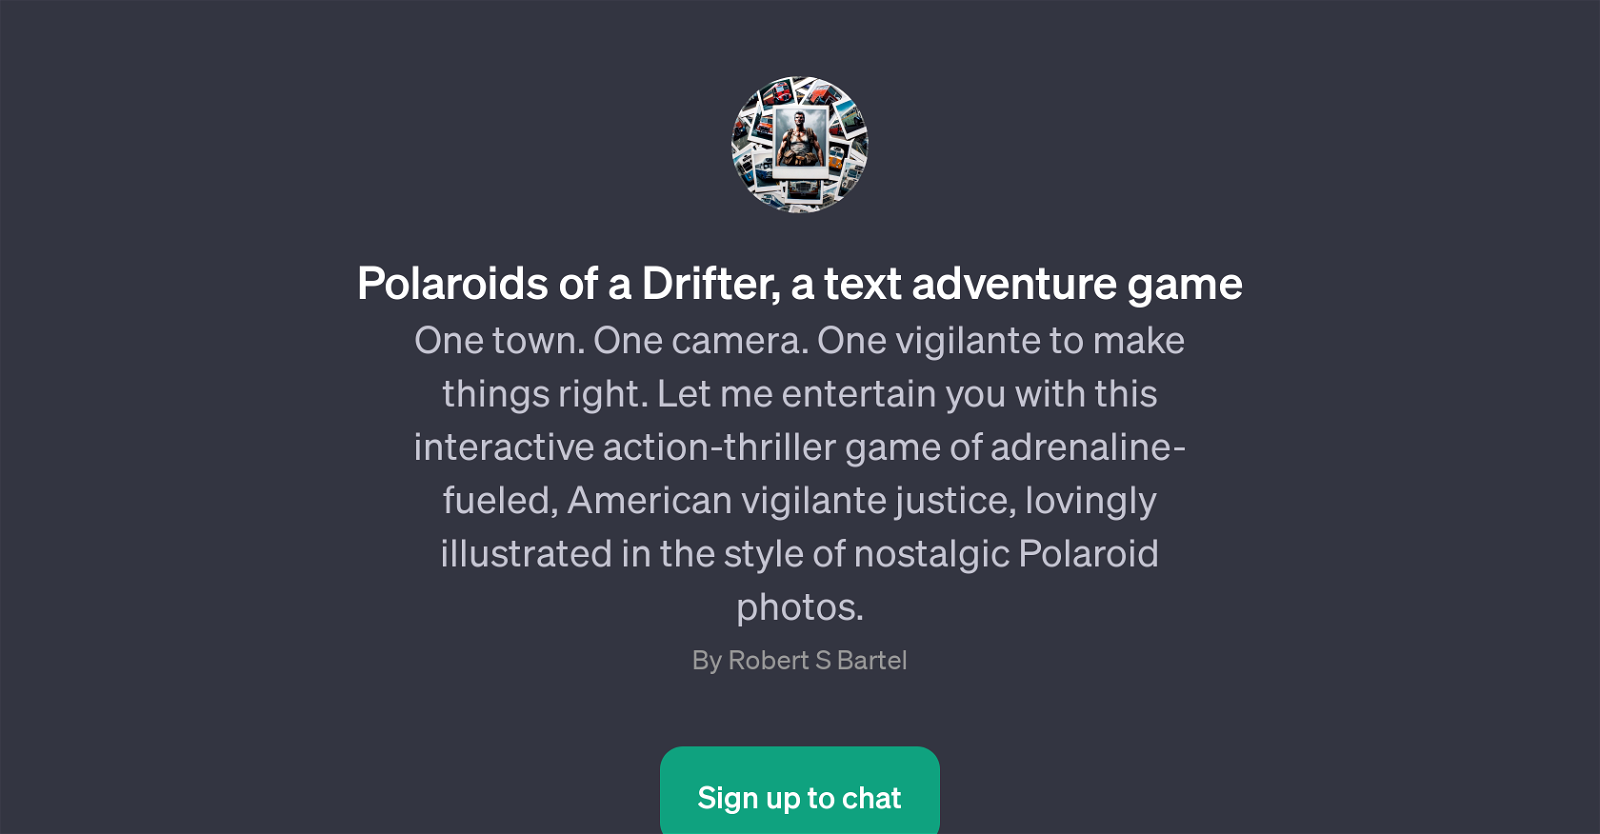 Polaroids of a Drifter website